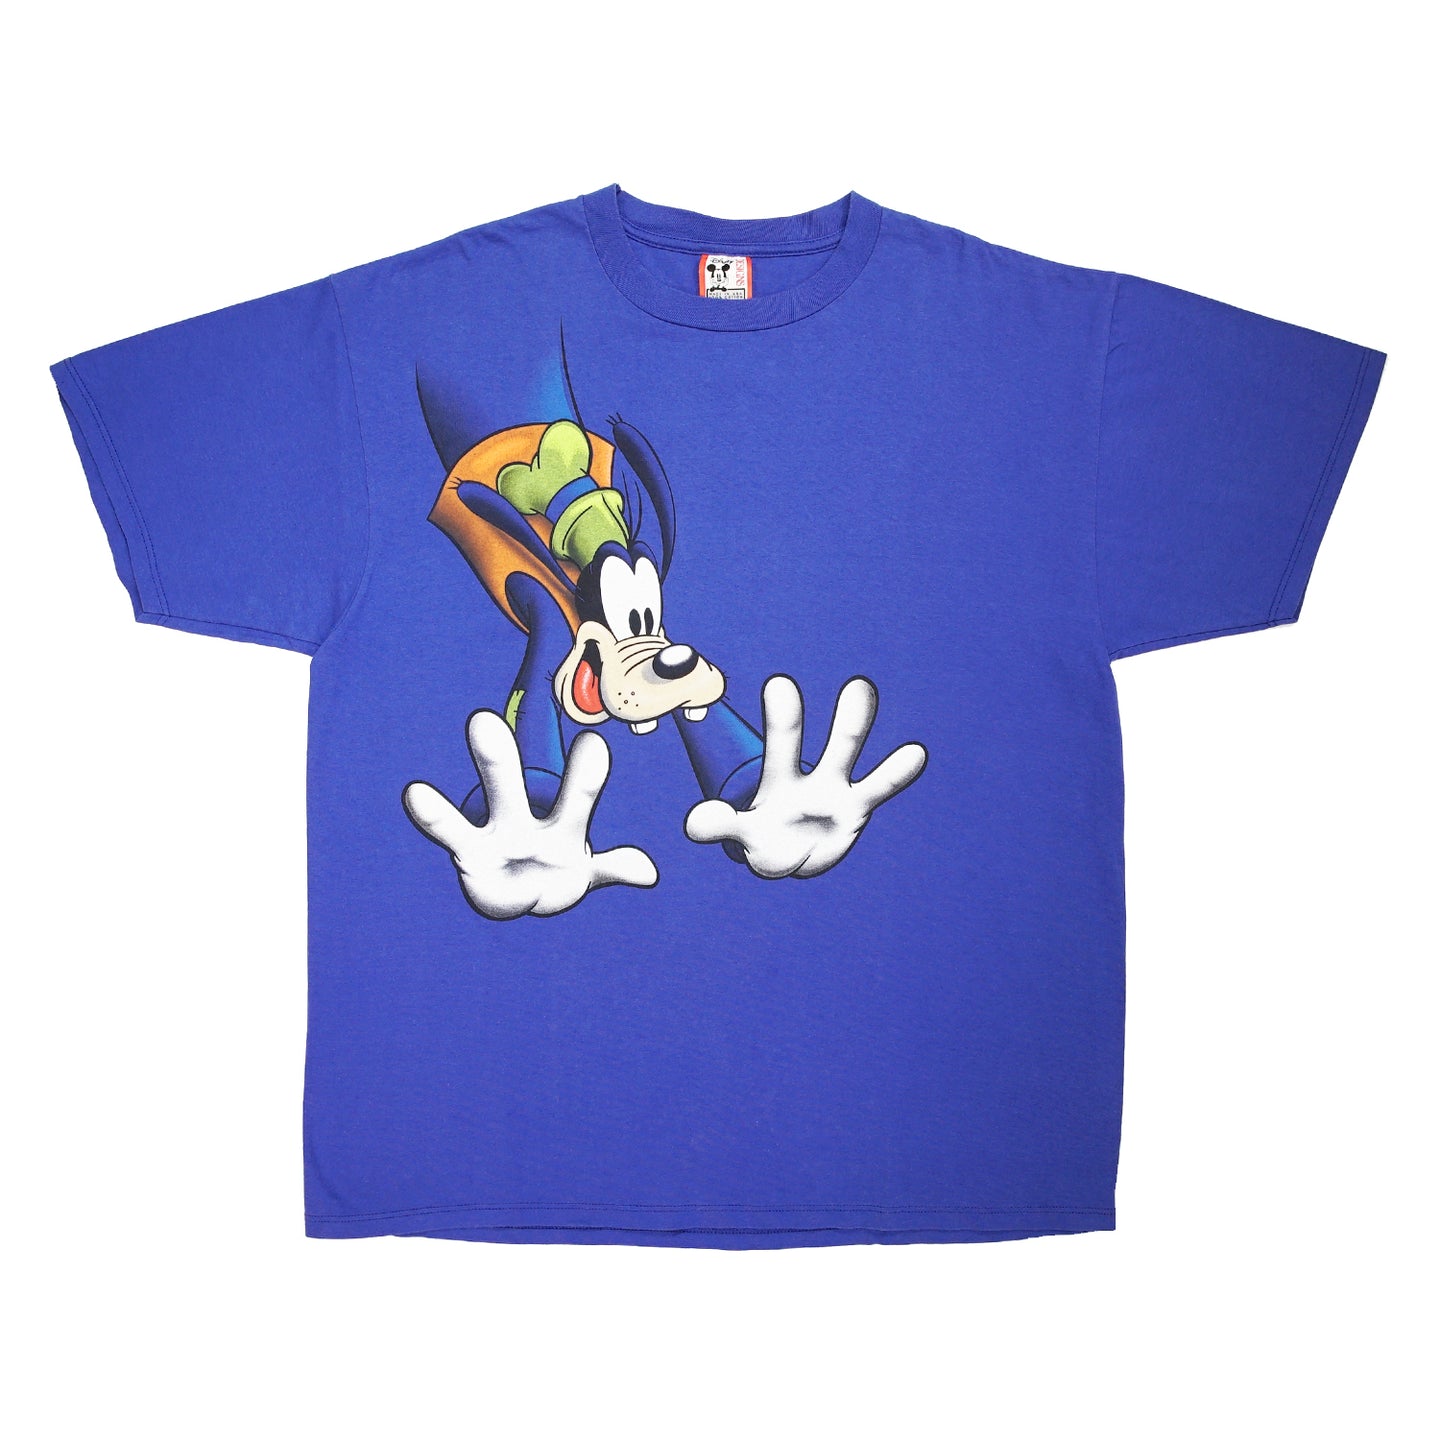 '90s Goofy Disney graphic tee XL